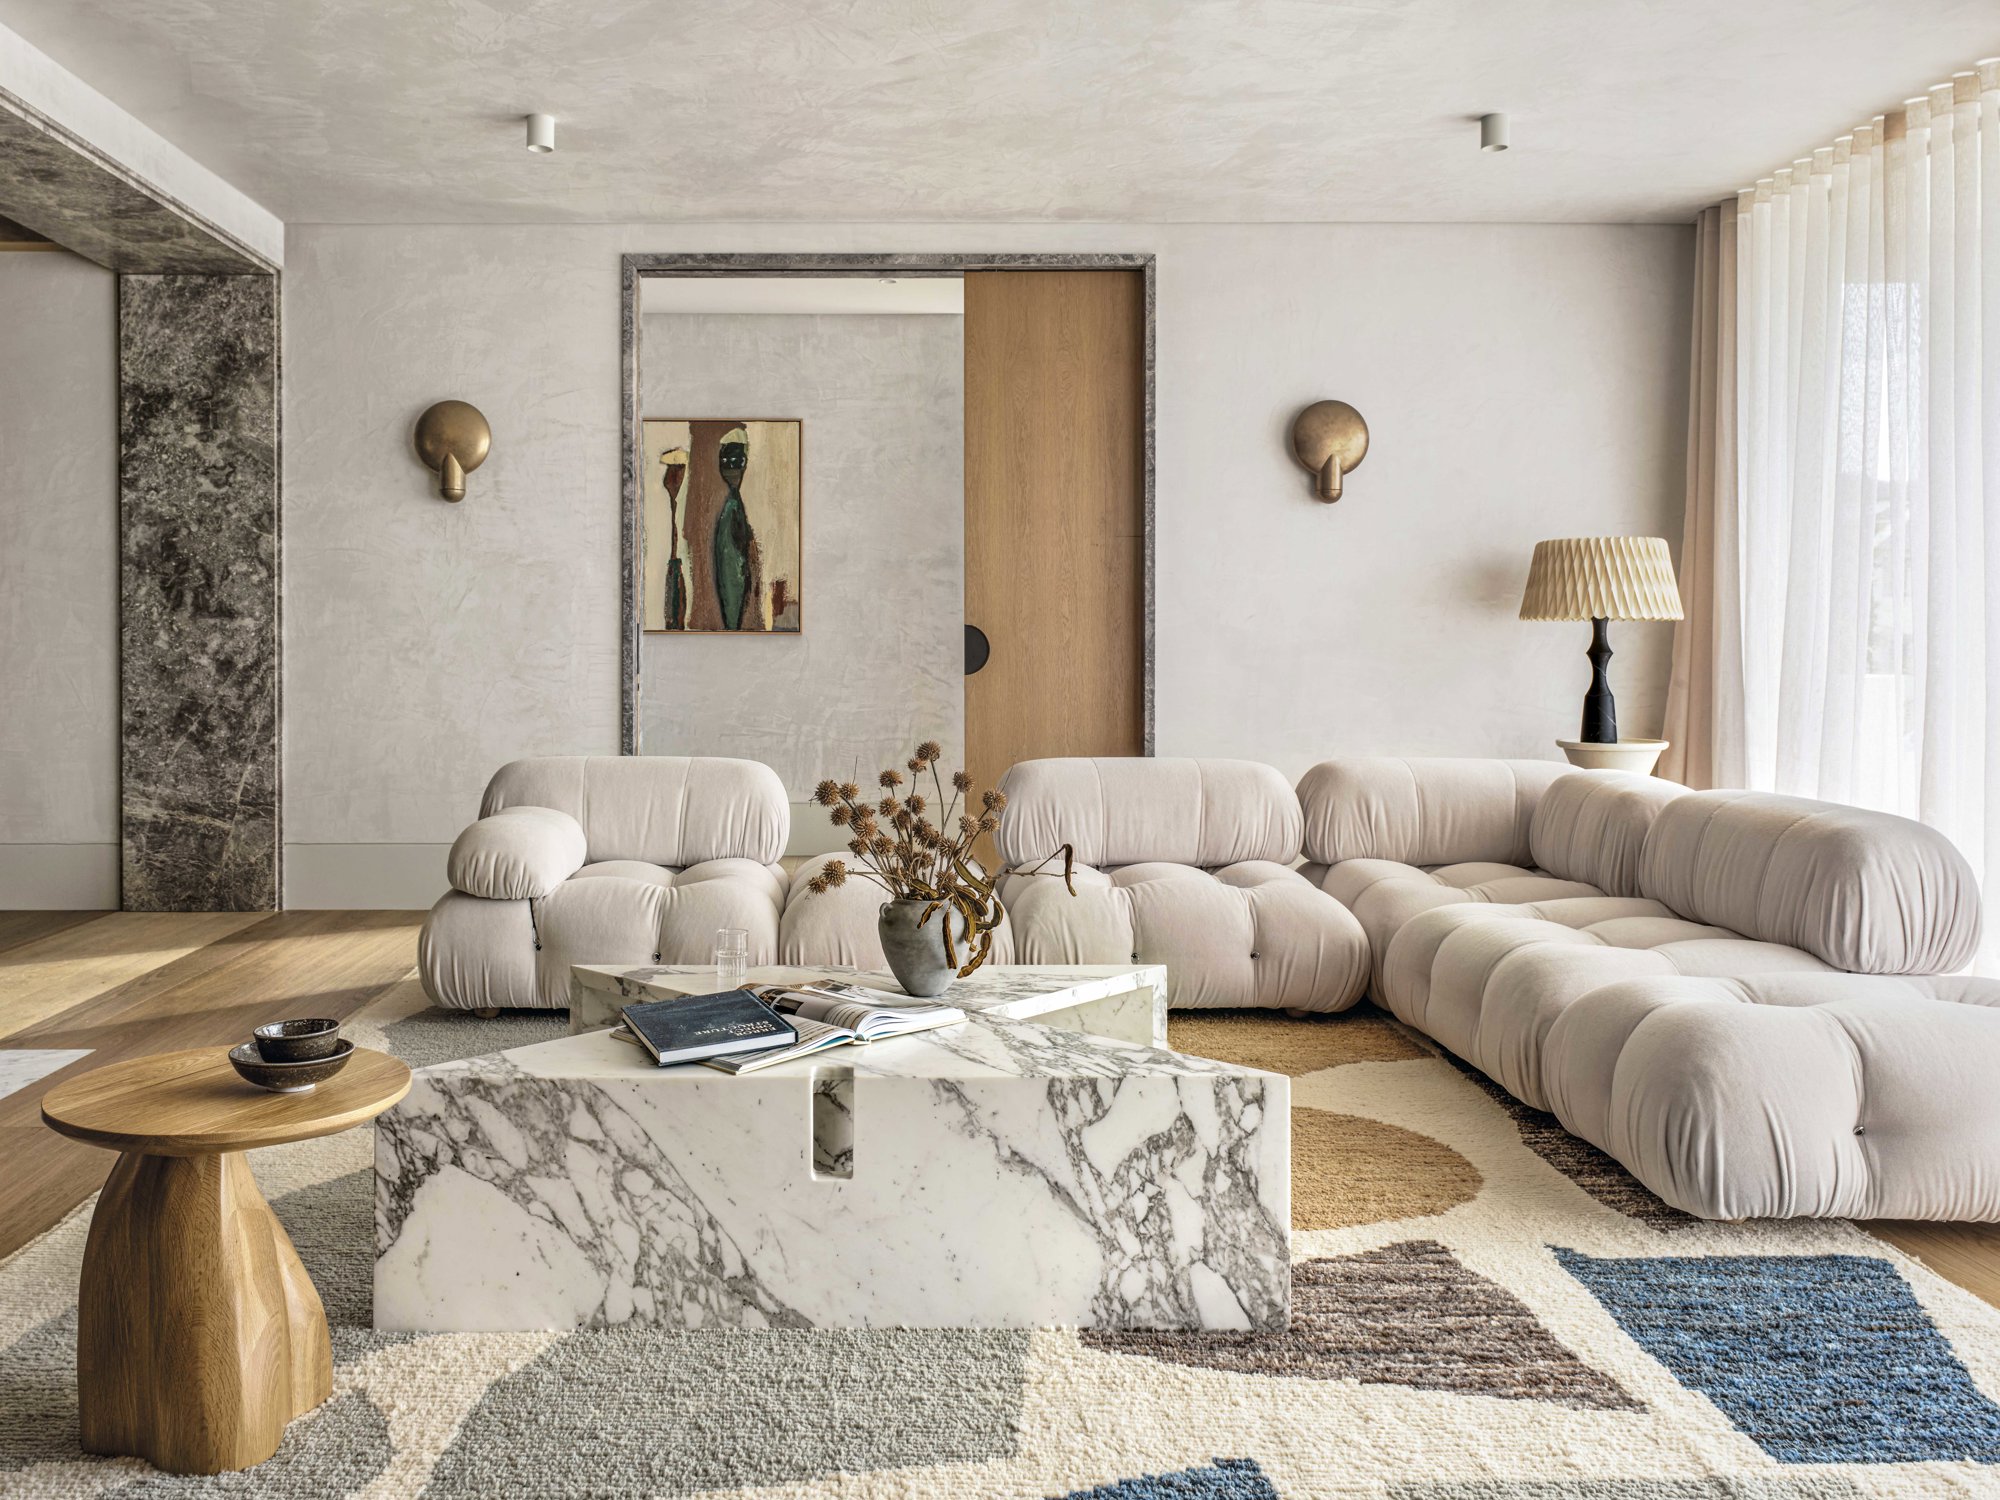 Salon con sofa de lineas curvas, mesa de marmol y alfombra